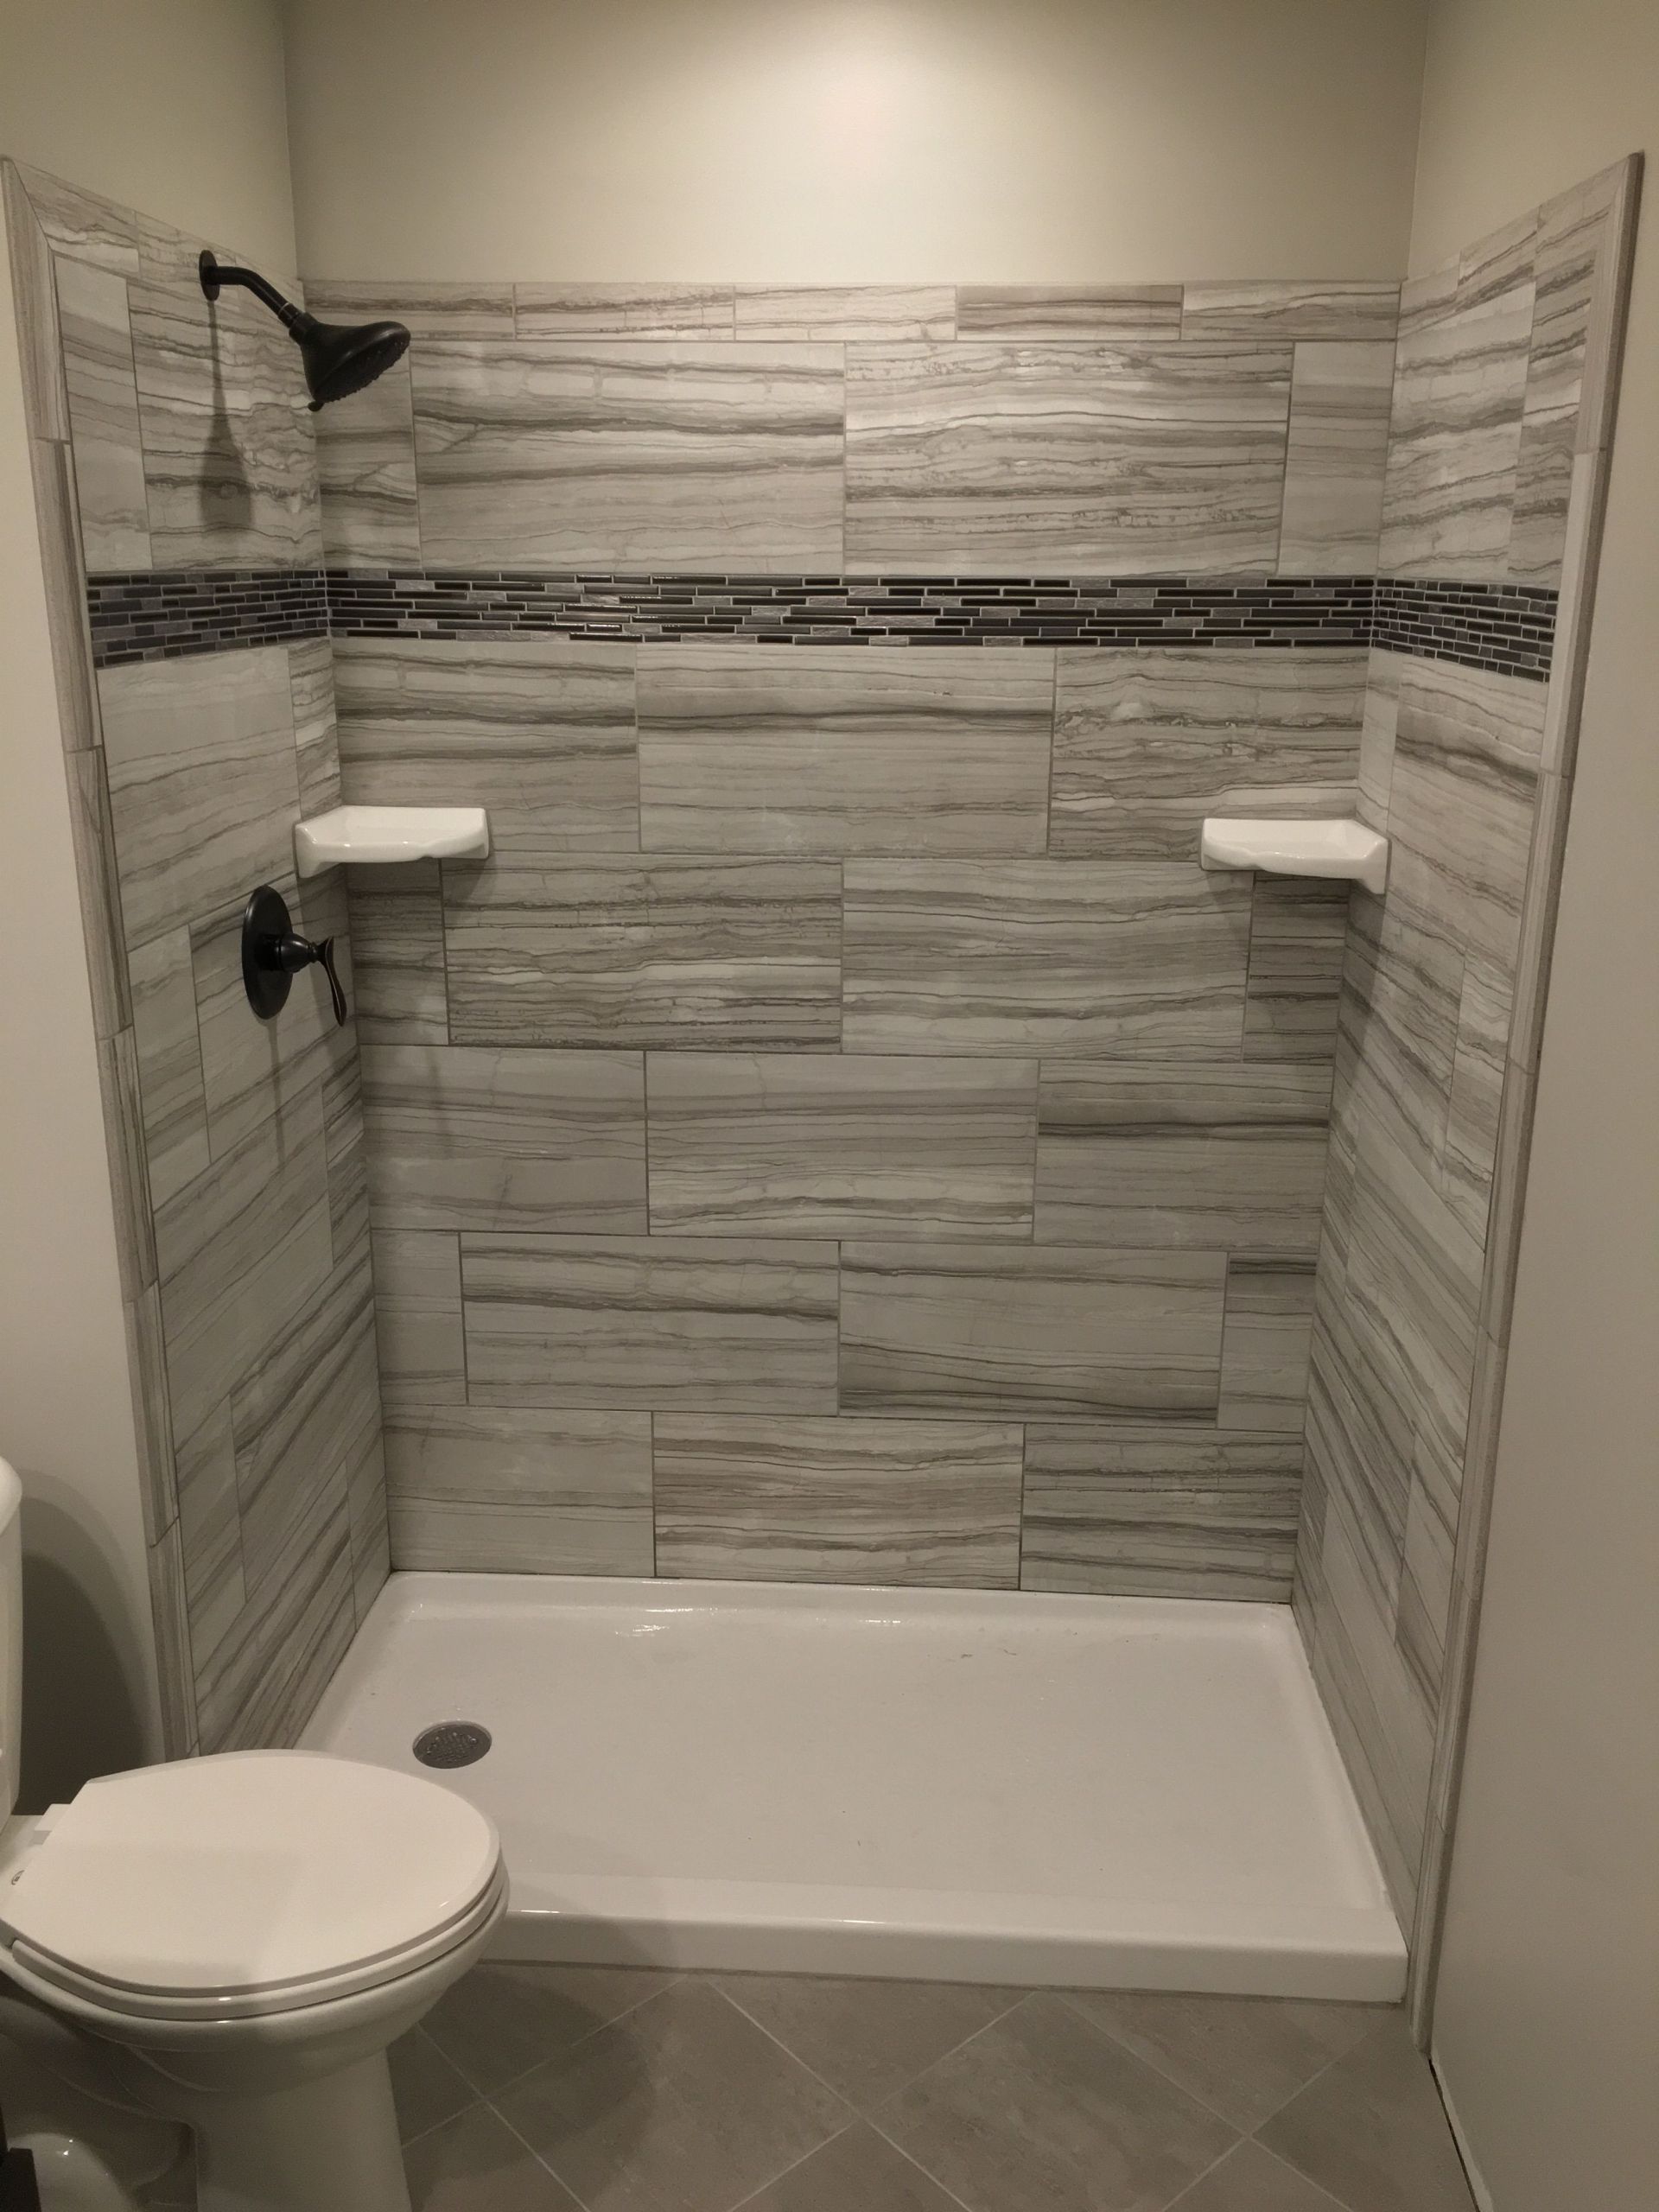 Home Depot Bathroom Shower Tile
 Tile shower Grigio from Home Depot